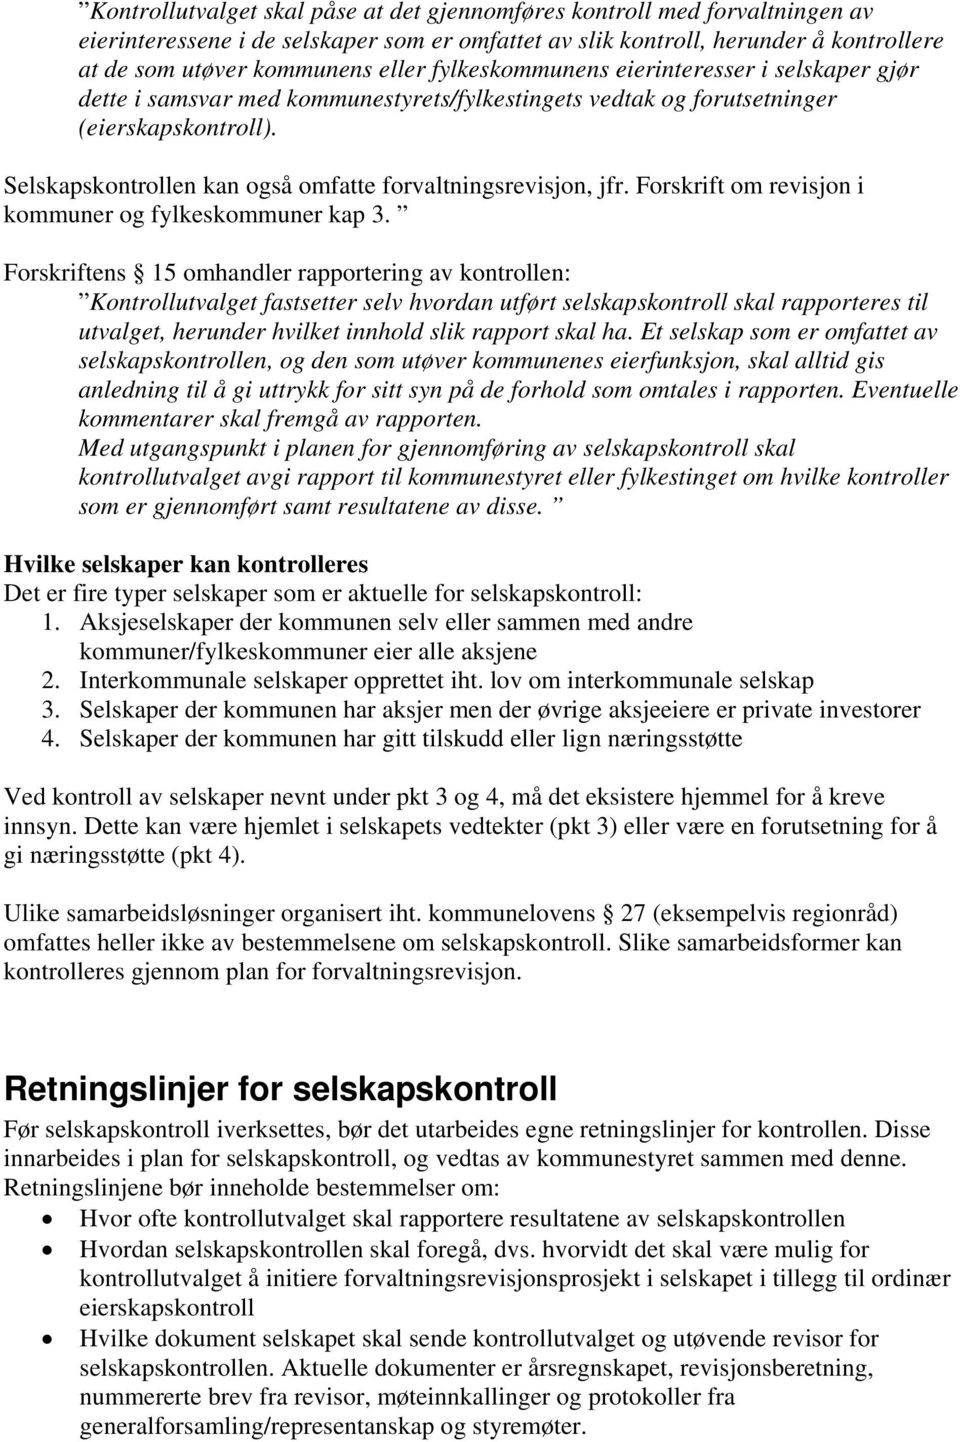 Selskapskontrollen kan også omfatte forvaltningsrevisjon, jfr. Forskrift om revisjon i kommuner og fylkeskommuner kap 3.